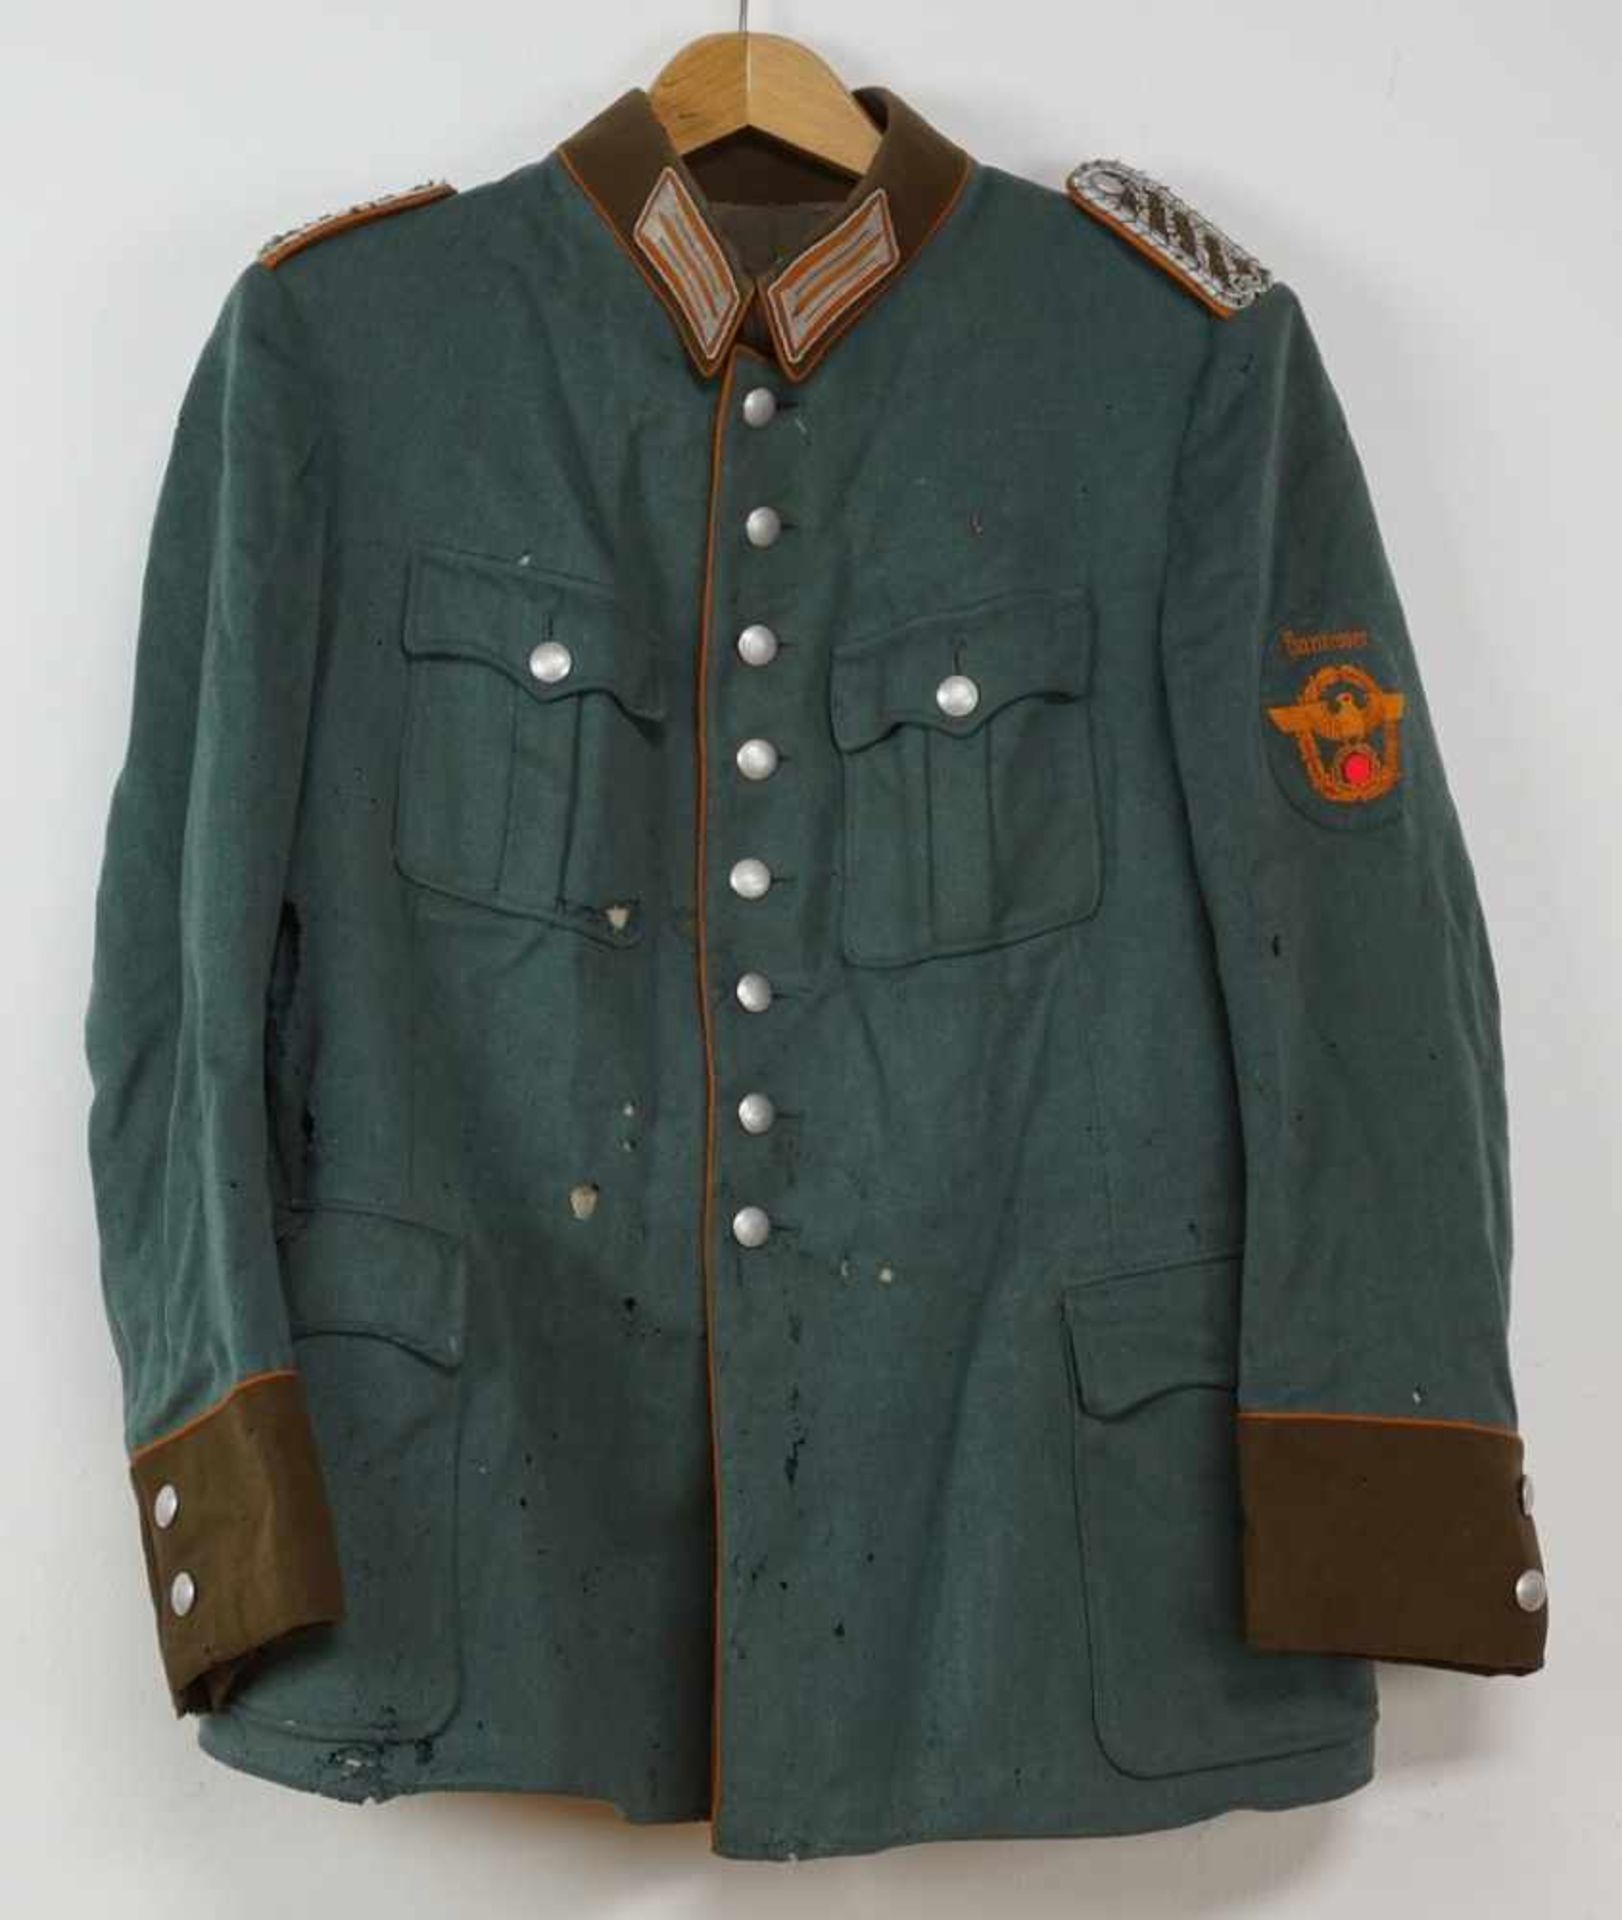 Viertaschenrock für Meister der Gendarmeriesogenanntes III. Reich, Gabardine, Ärmelabzeichen